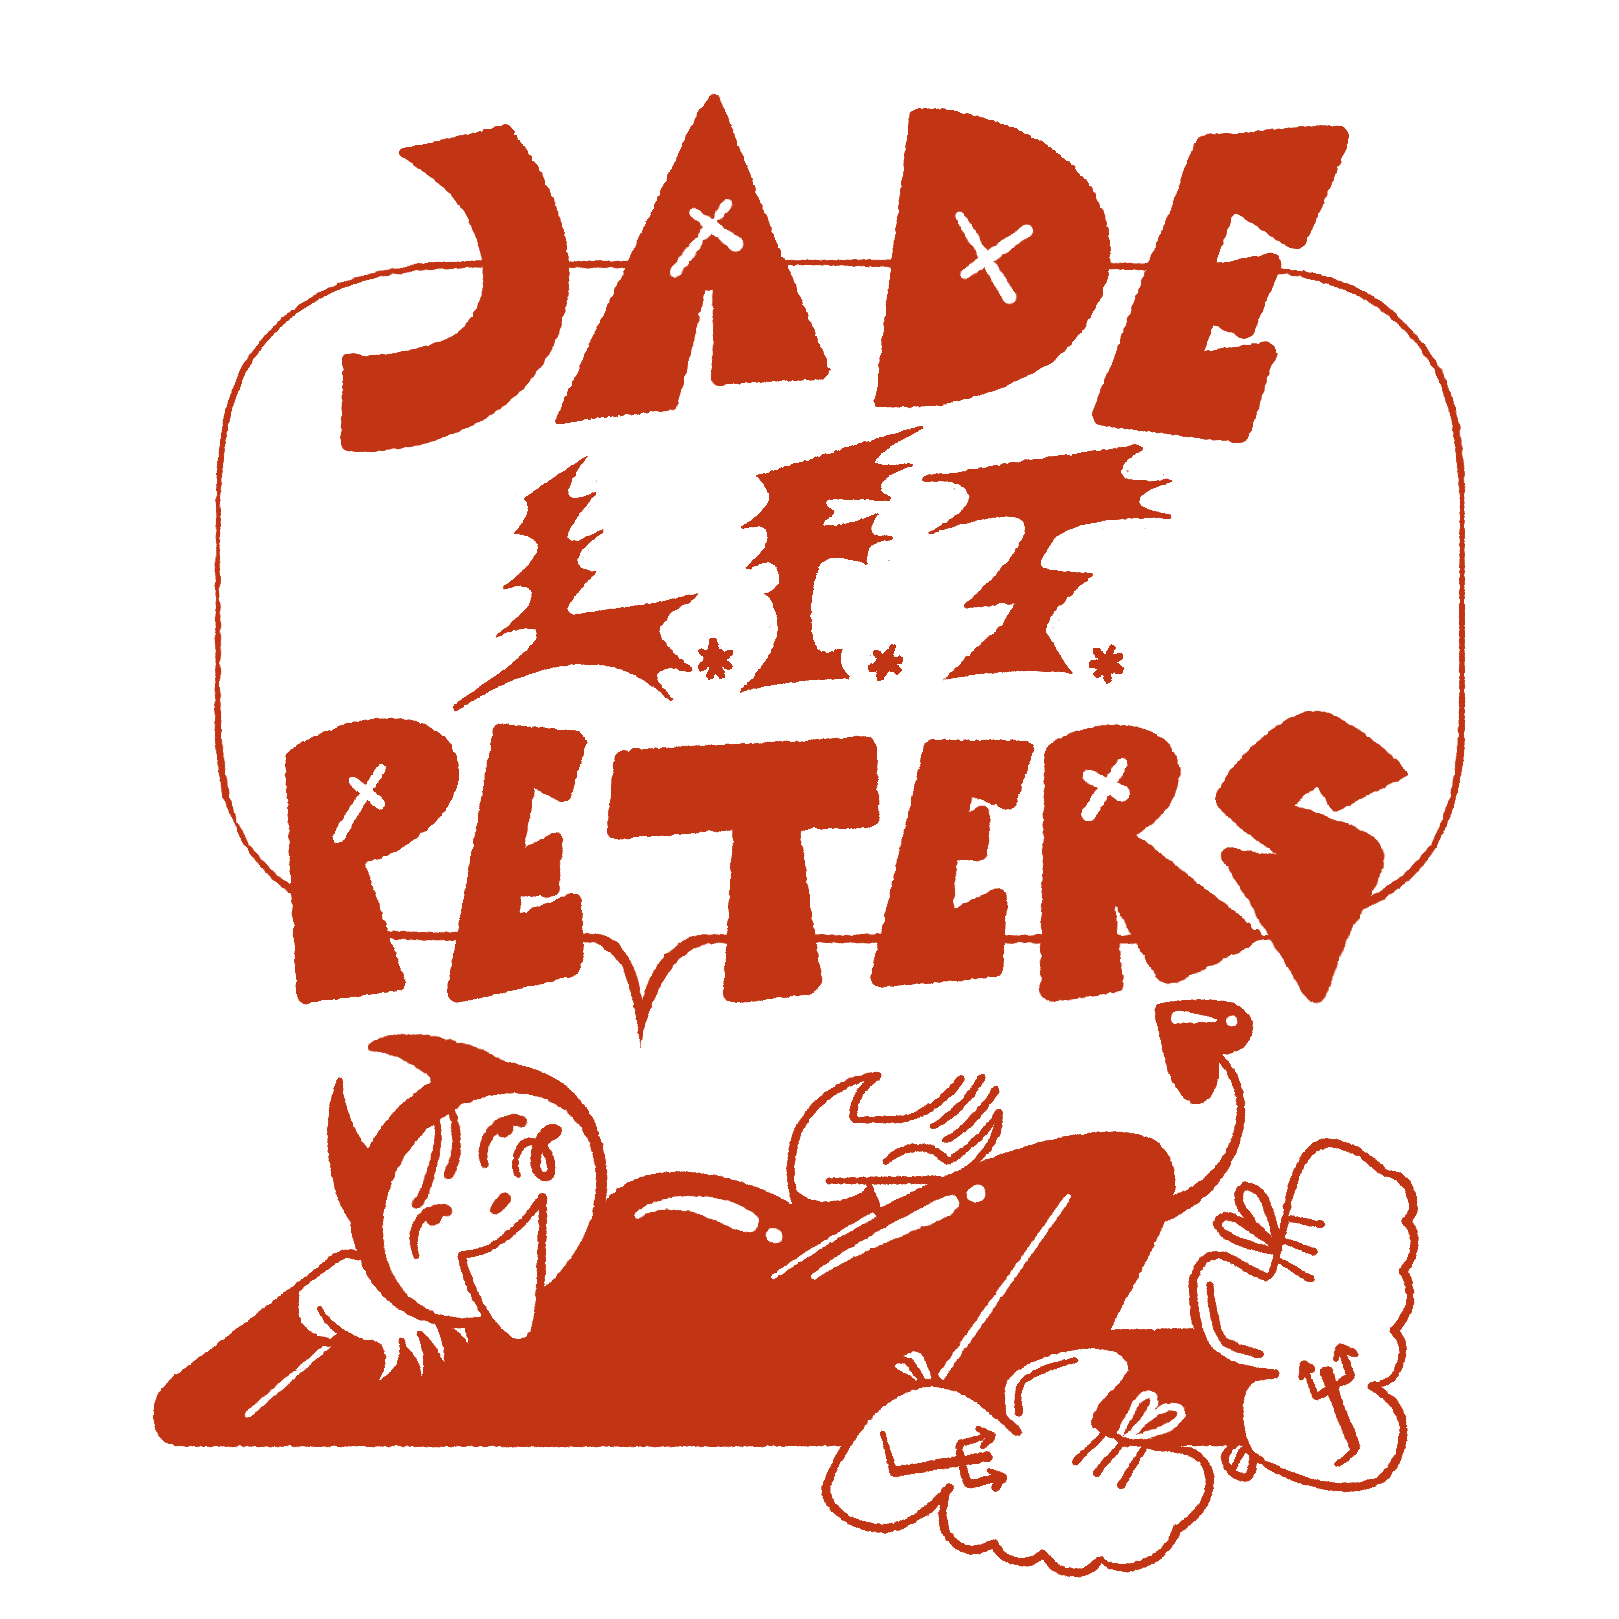 Jade Peters